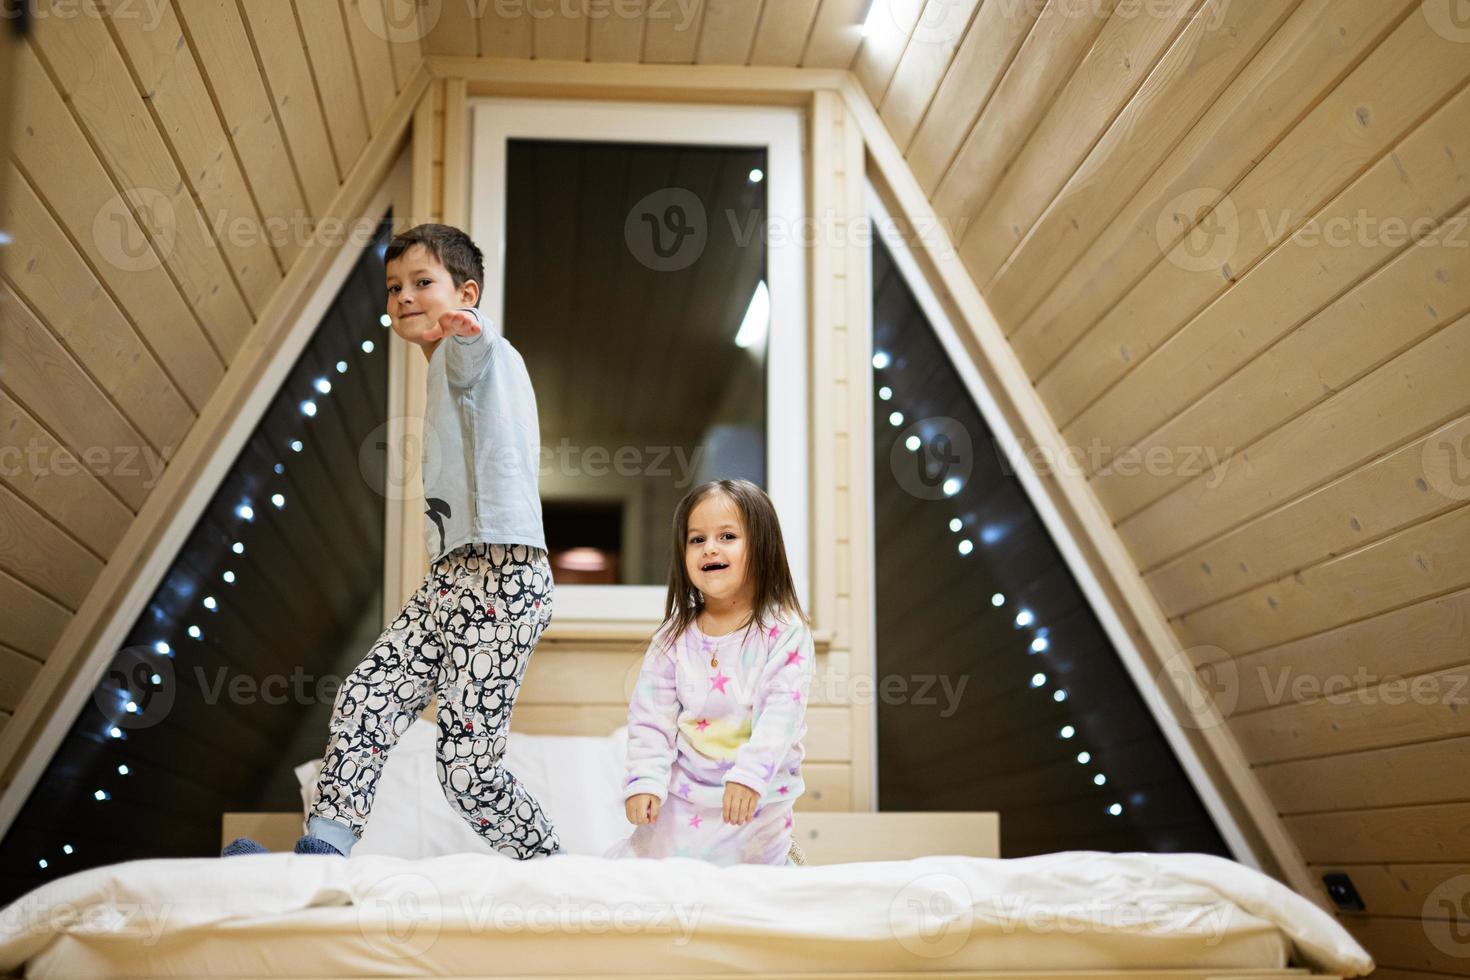 barn i mjuk värma pyjamas spelar på trä- stuga Hem. begrepp av barndom, fritid aktivitet, lycka. bror och syster har roligt och spelar tillsammans. foto